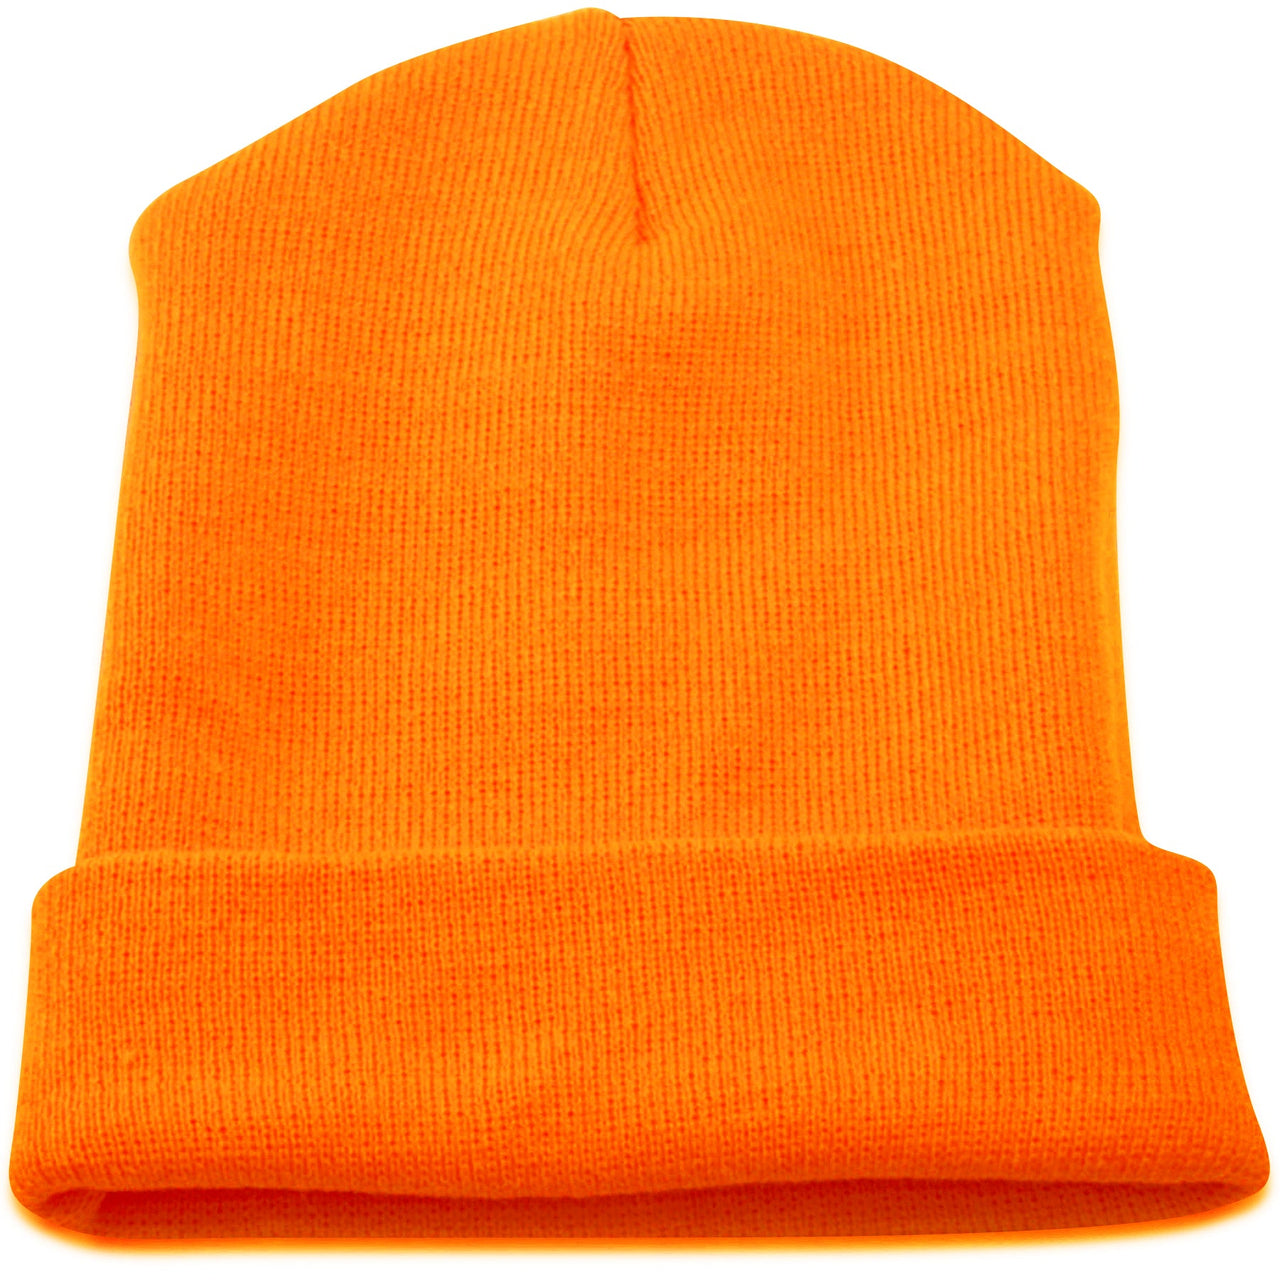 Safety Orange Basic Winter Raised Cuff Beanie